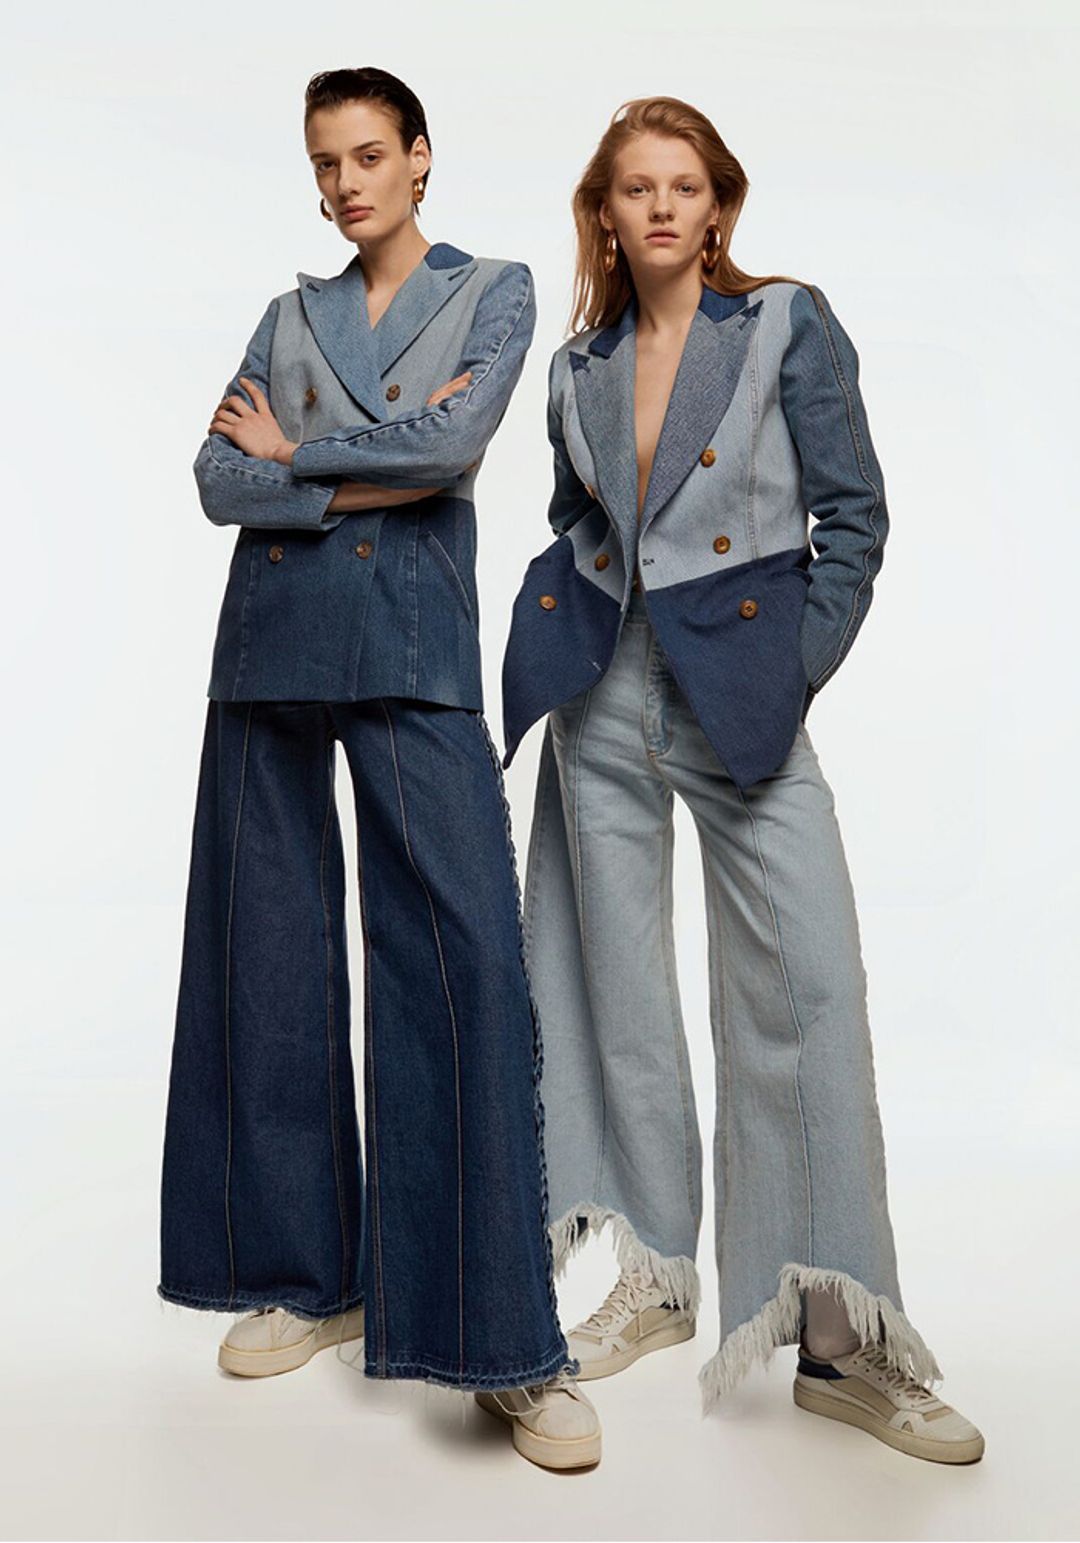 13 Amazing Denim Blazer Outfit Ideas for Women